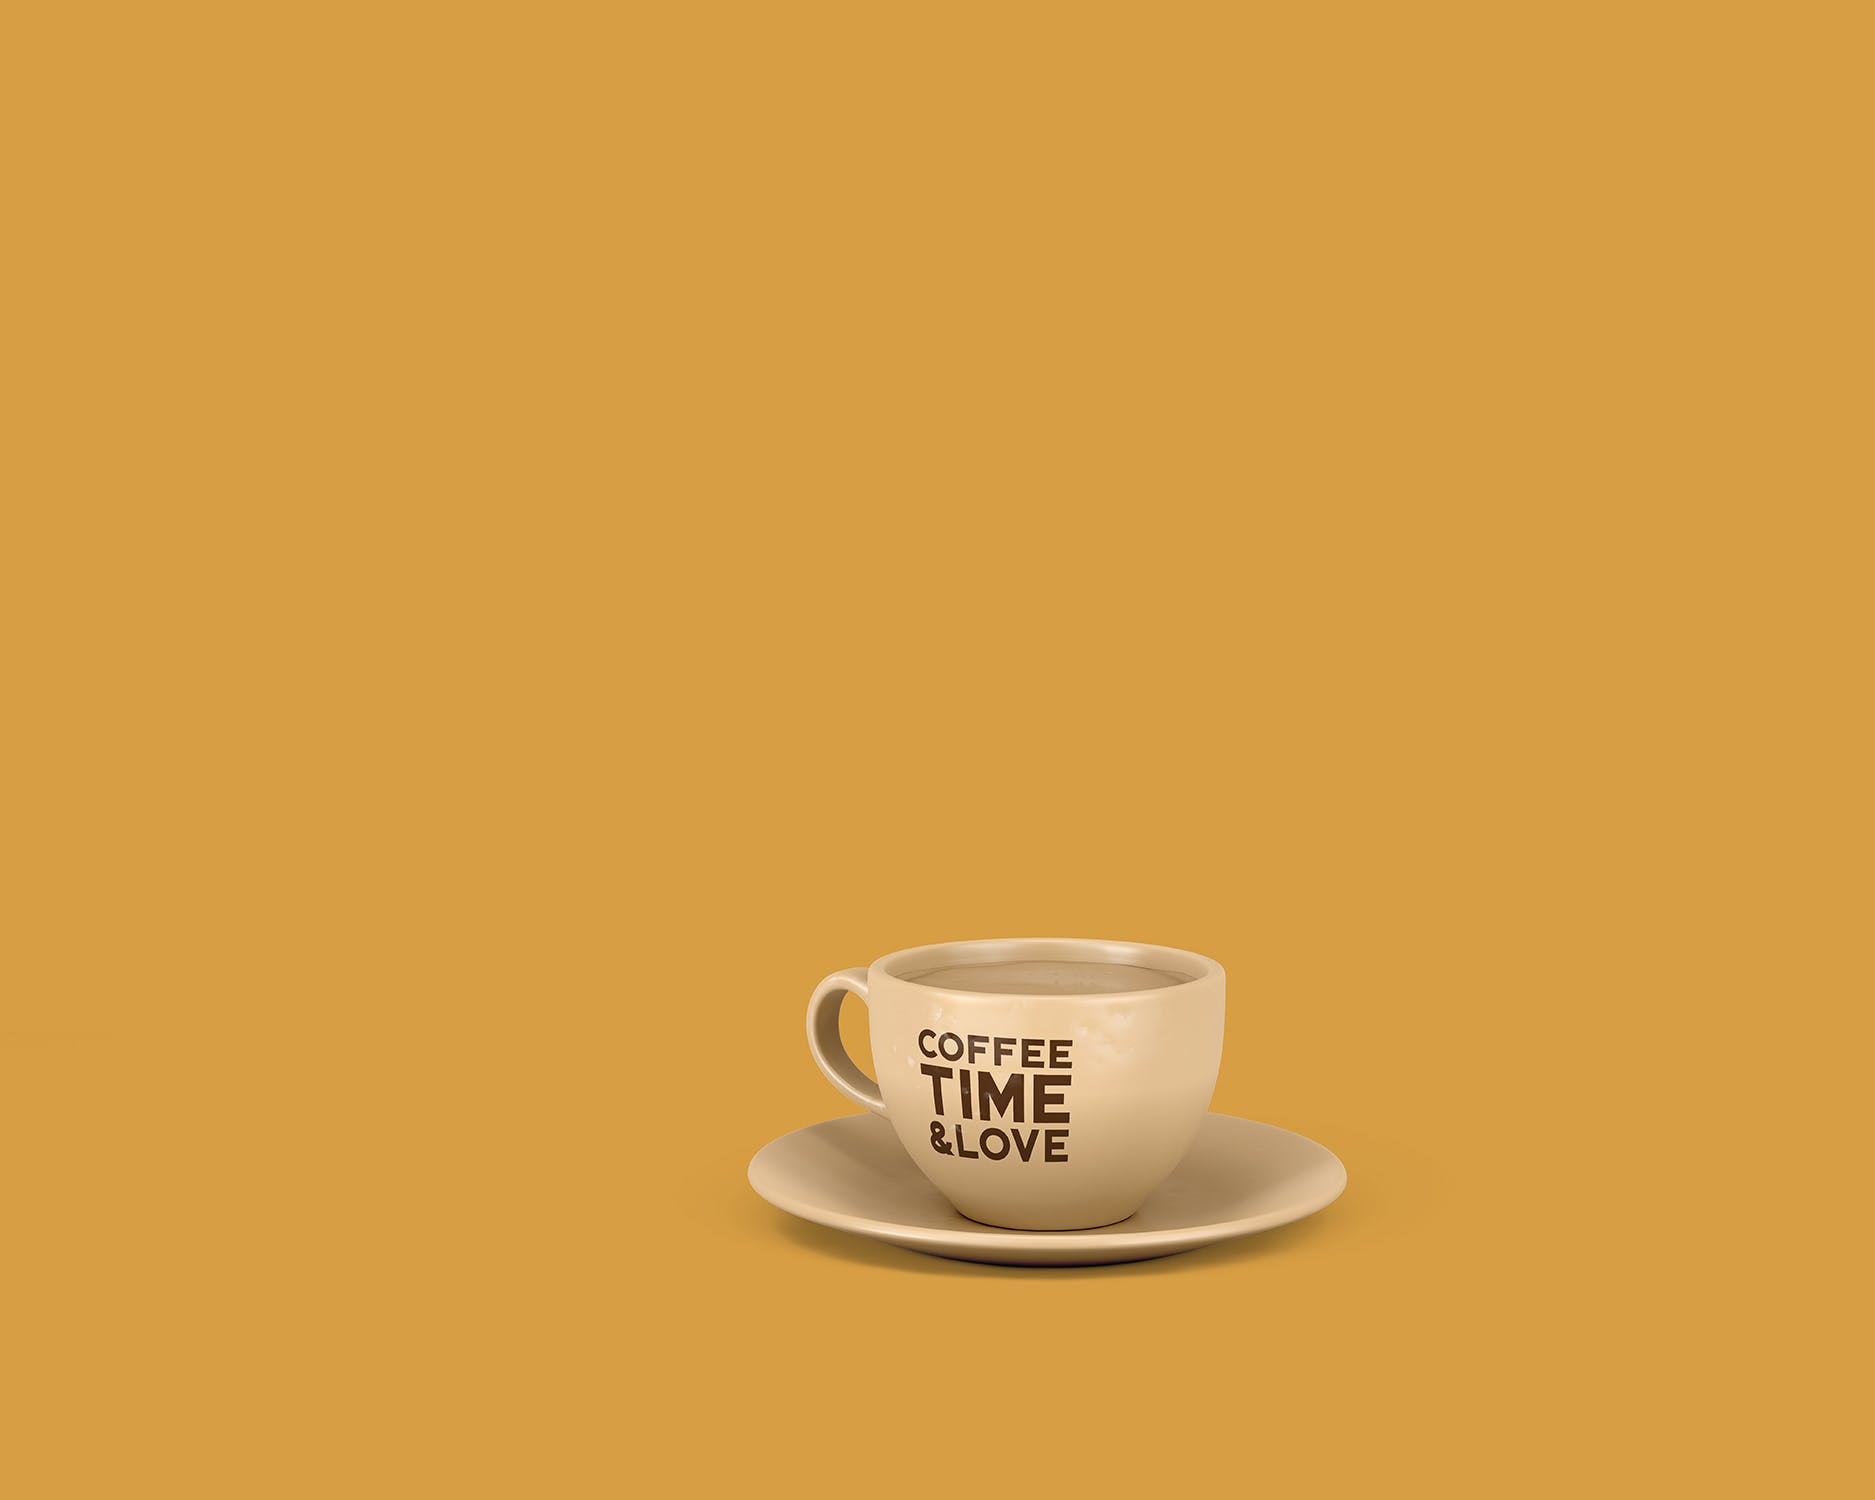 8个咖啡马克杯设计图蚂蚁素材精选 8 Coffee Cup Mockups插图(7)